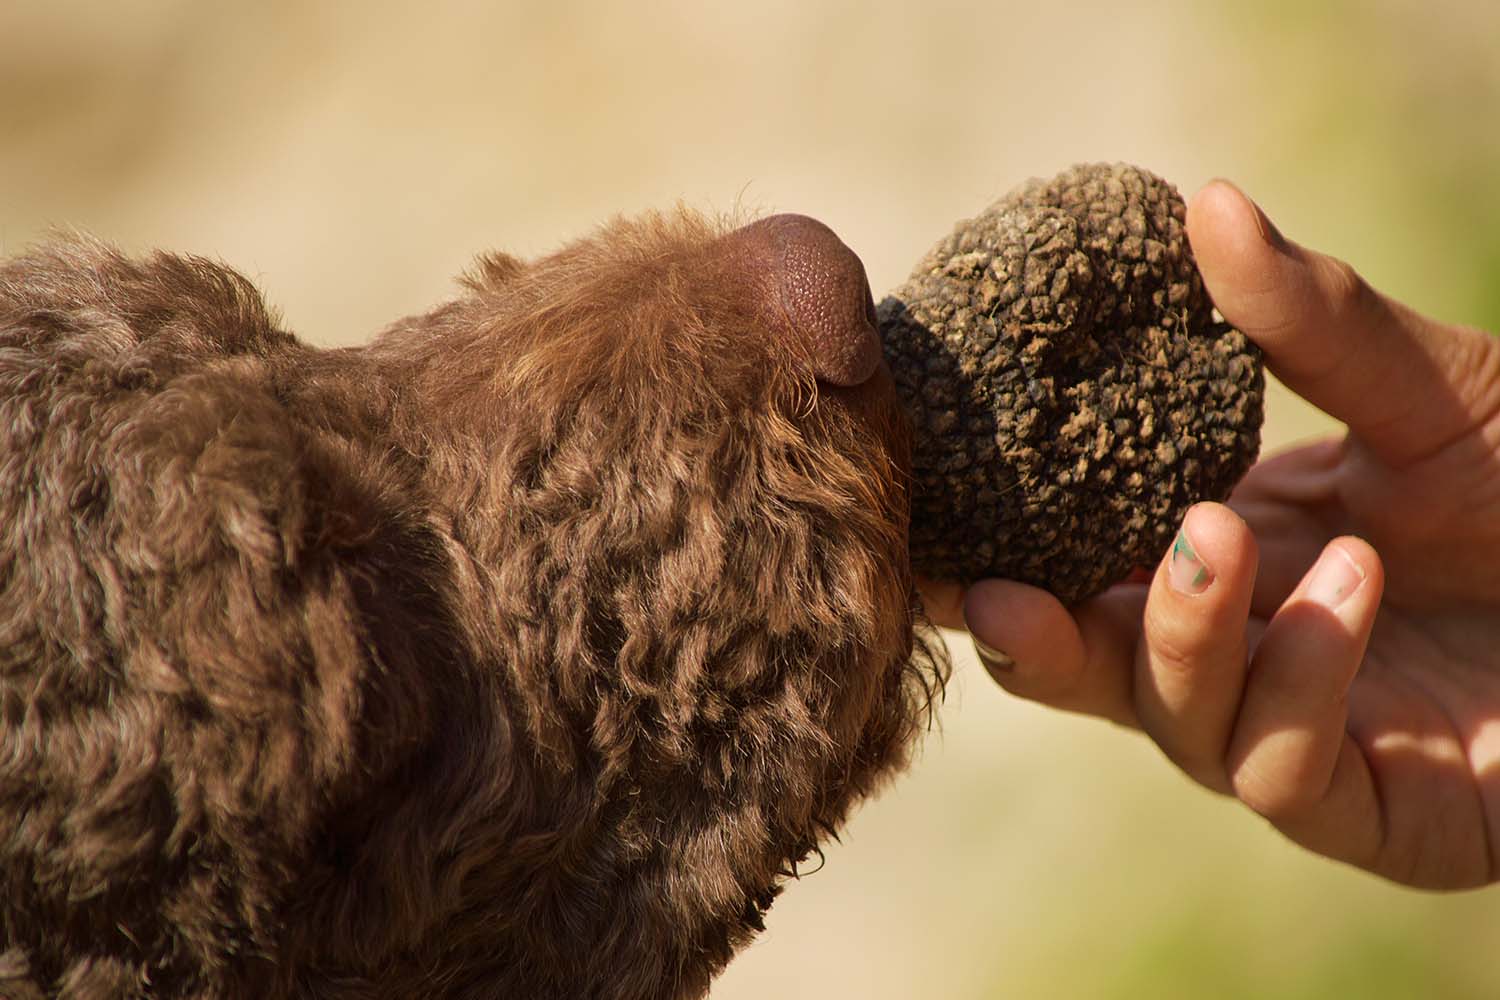 Purebred Lagotto Romagnolo truffle hunt training